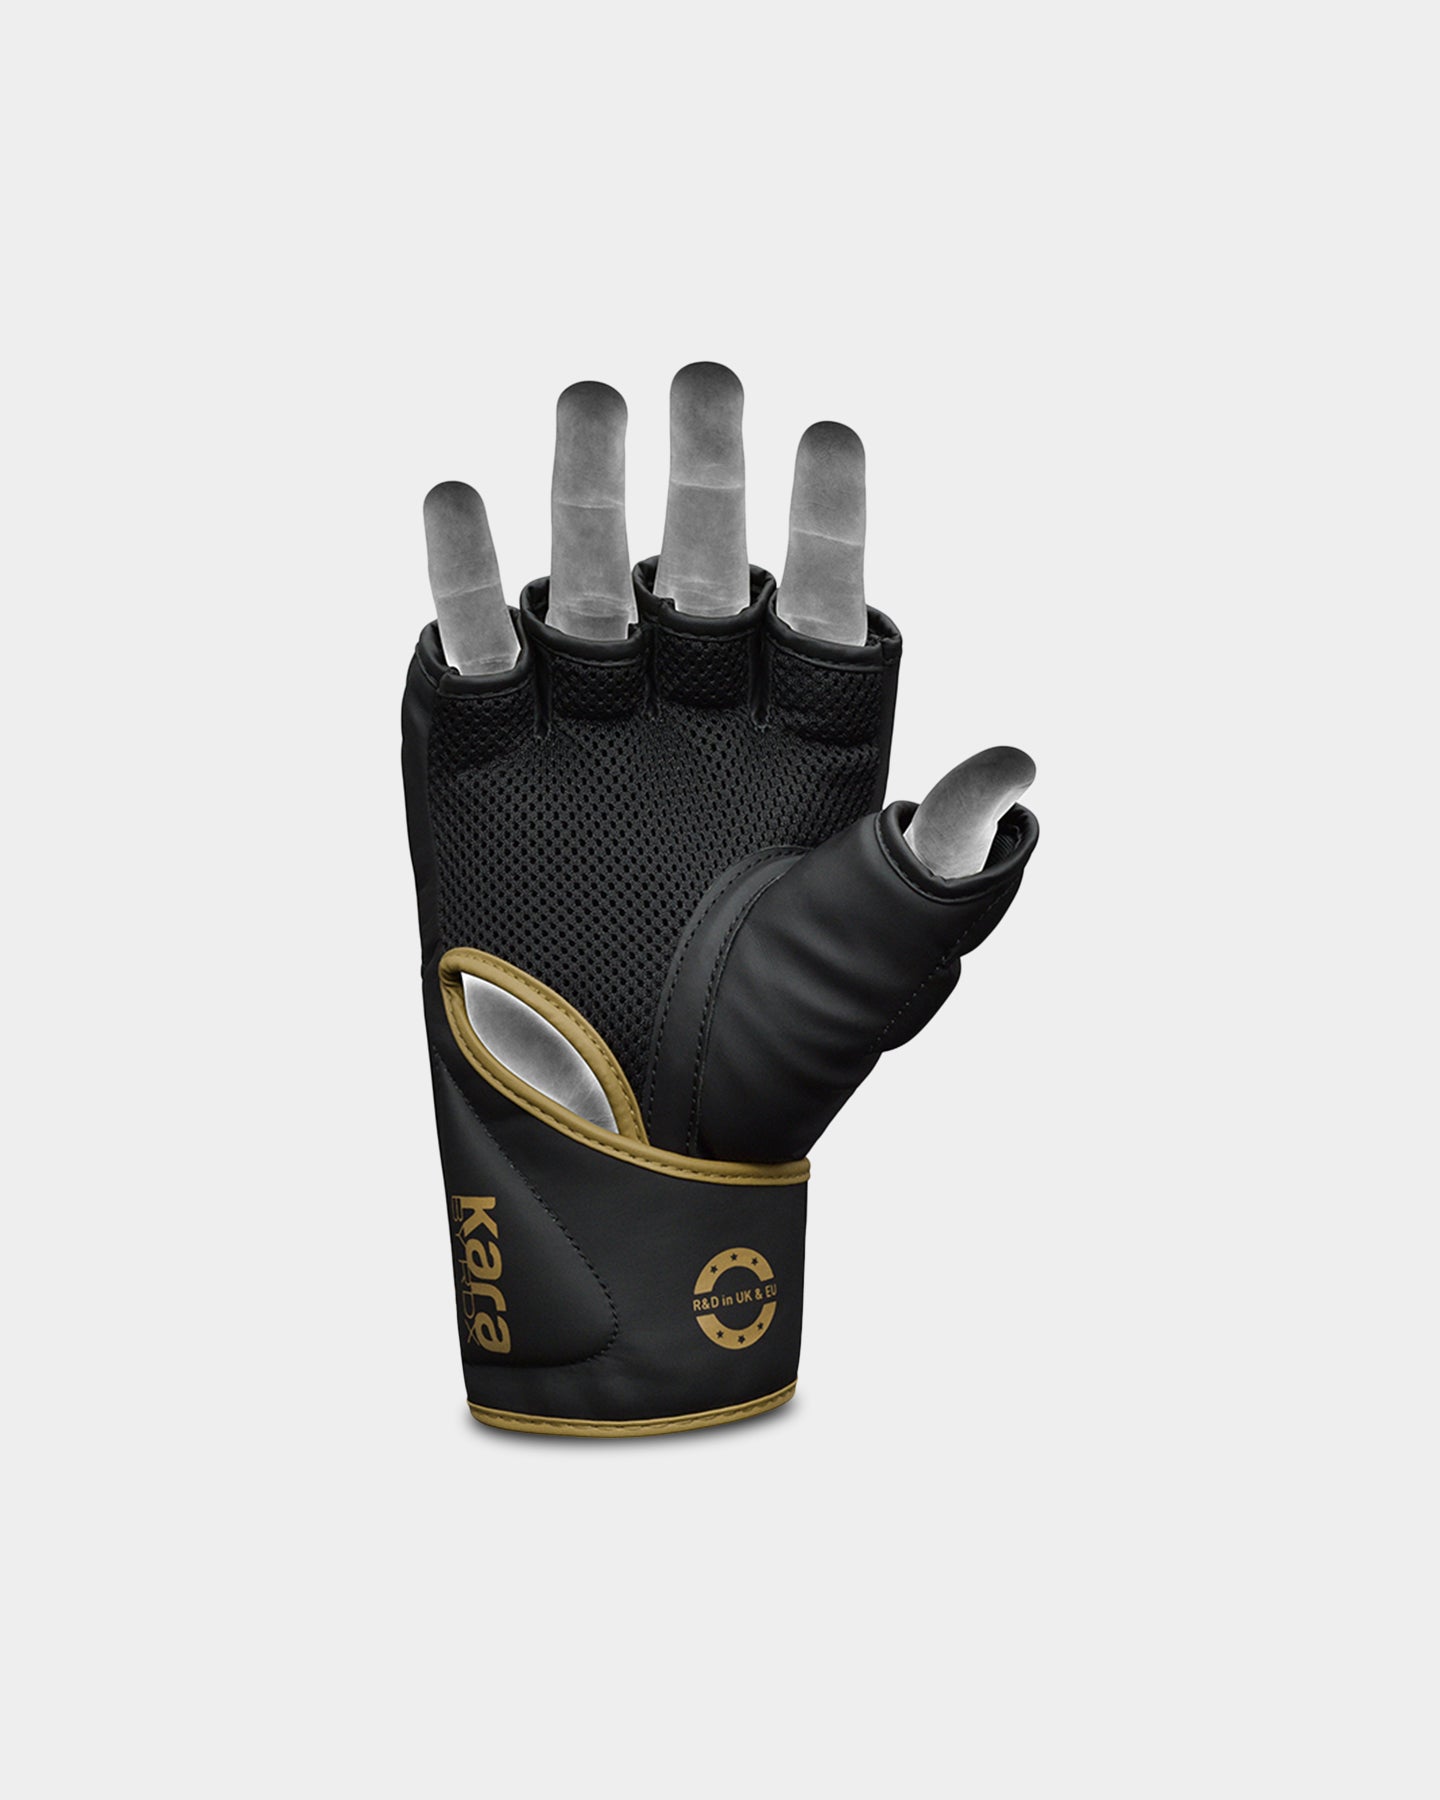 RDX Sports Grappling Gloves F6, XL, Golden A4